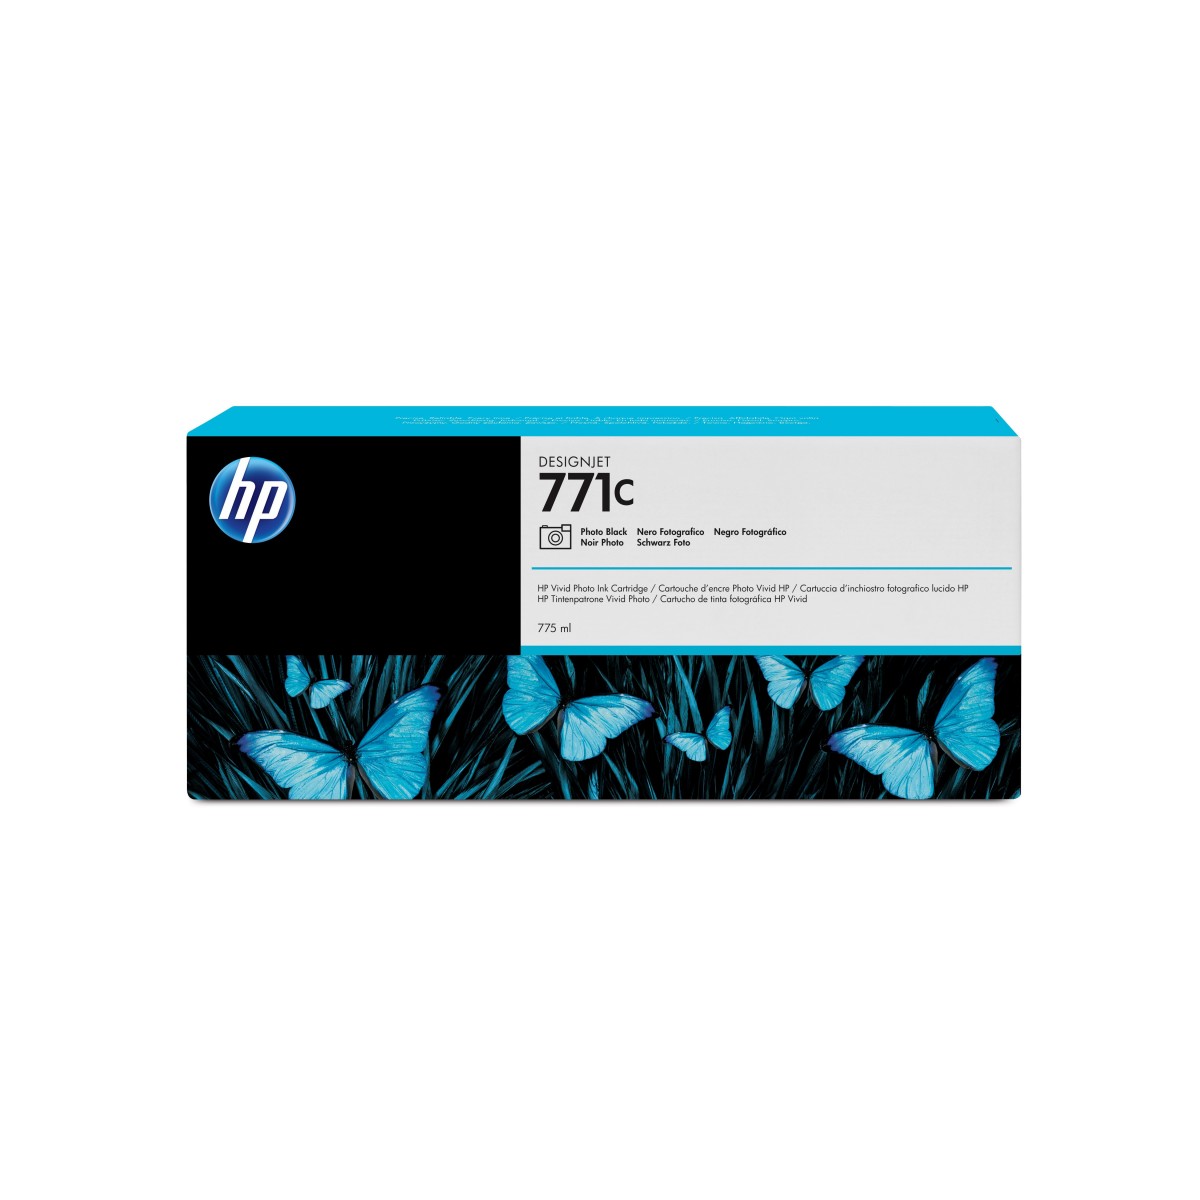 HP DesignJet 771C - Ink Cartridge Original - Matte/photo black - 775 ml